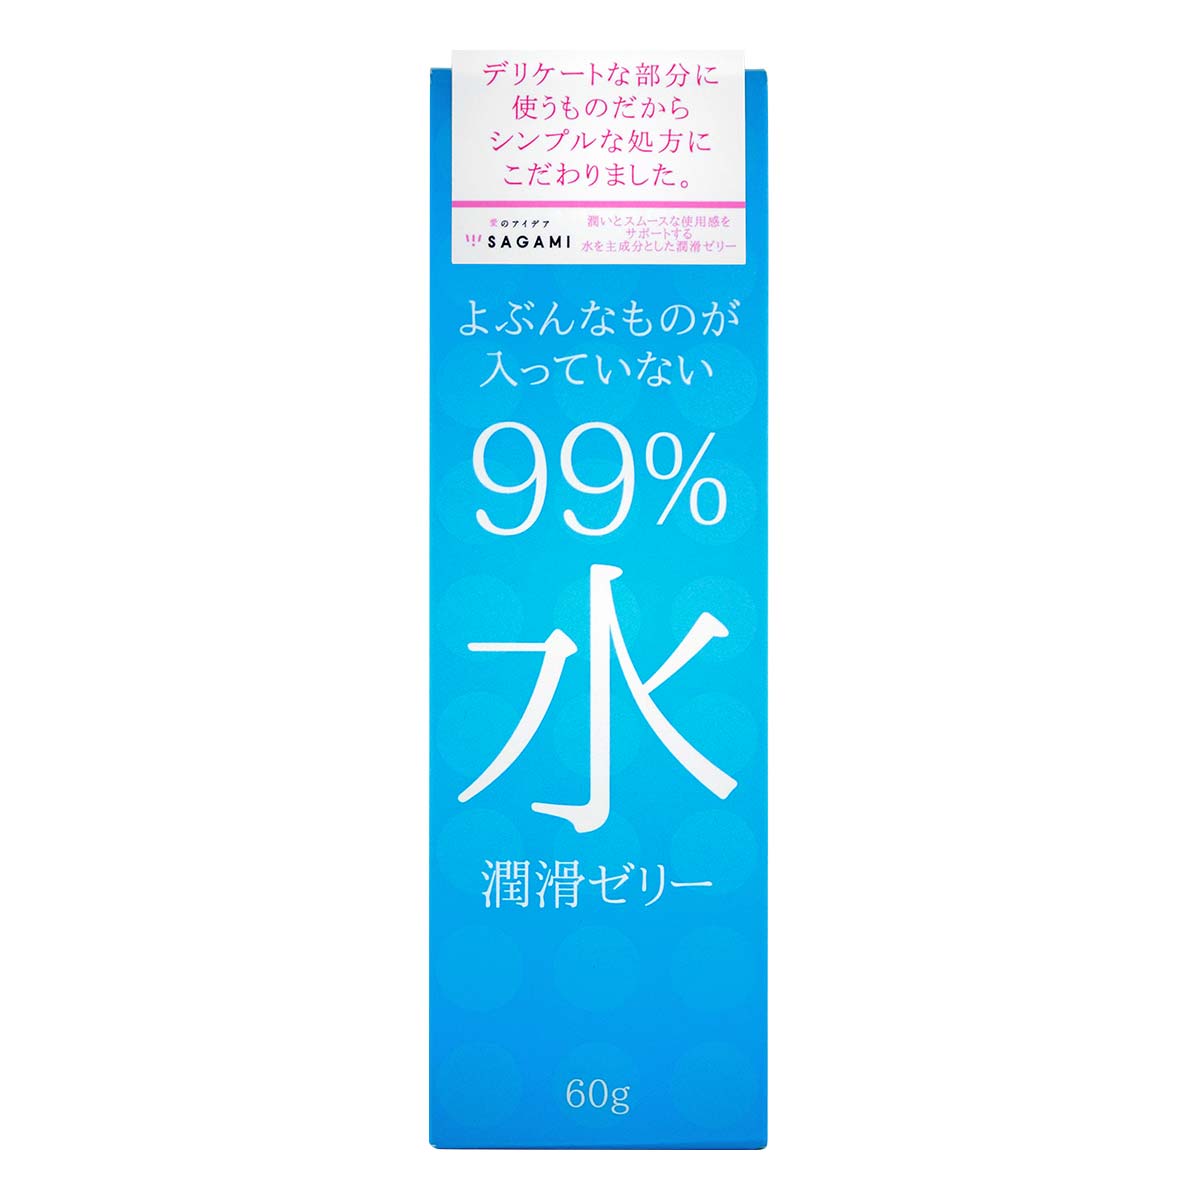 Sagami 99% Water Lubricating Gel 60g Water-based Lubricant-p_2